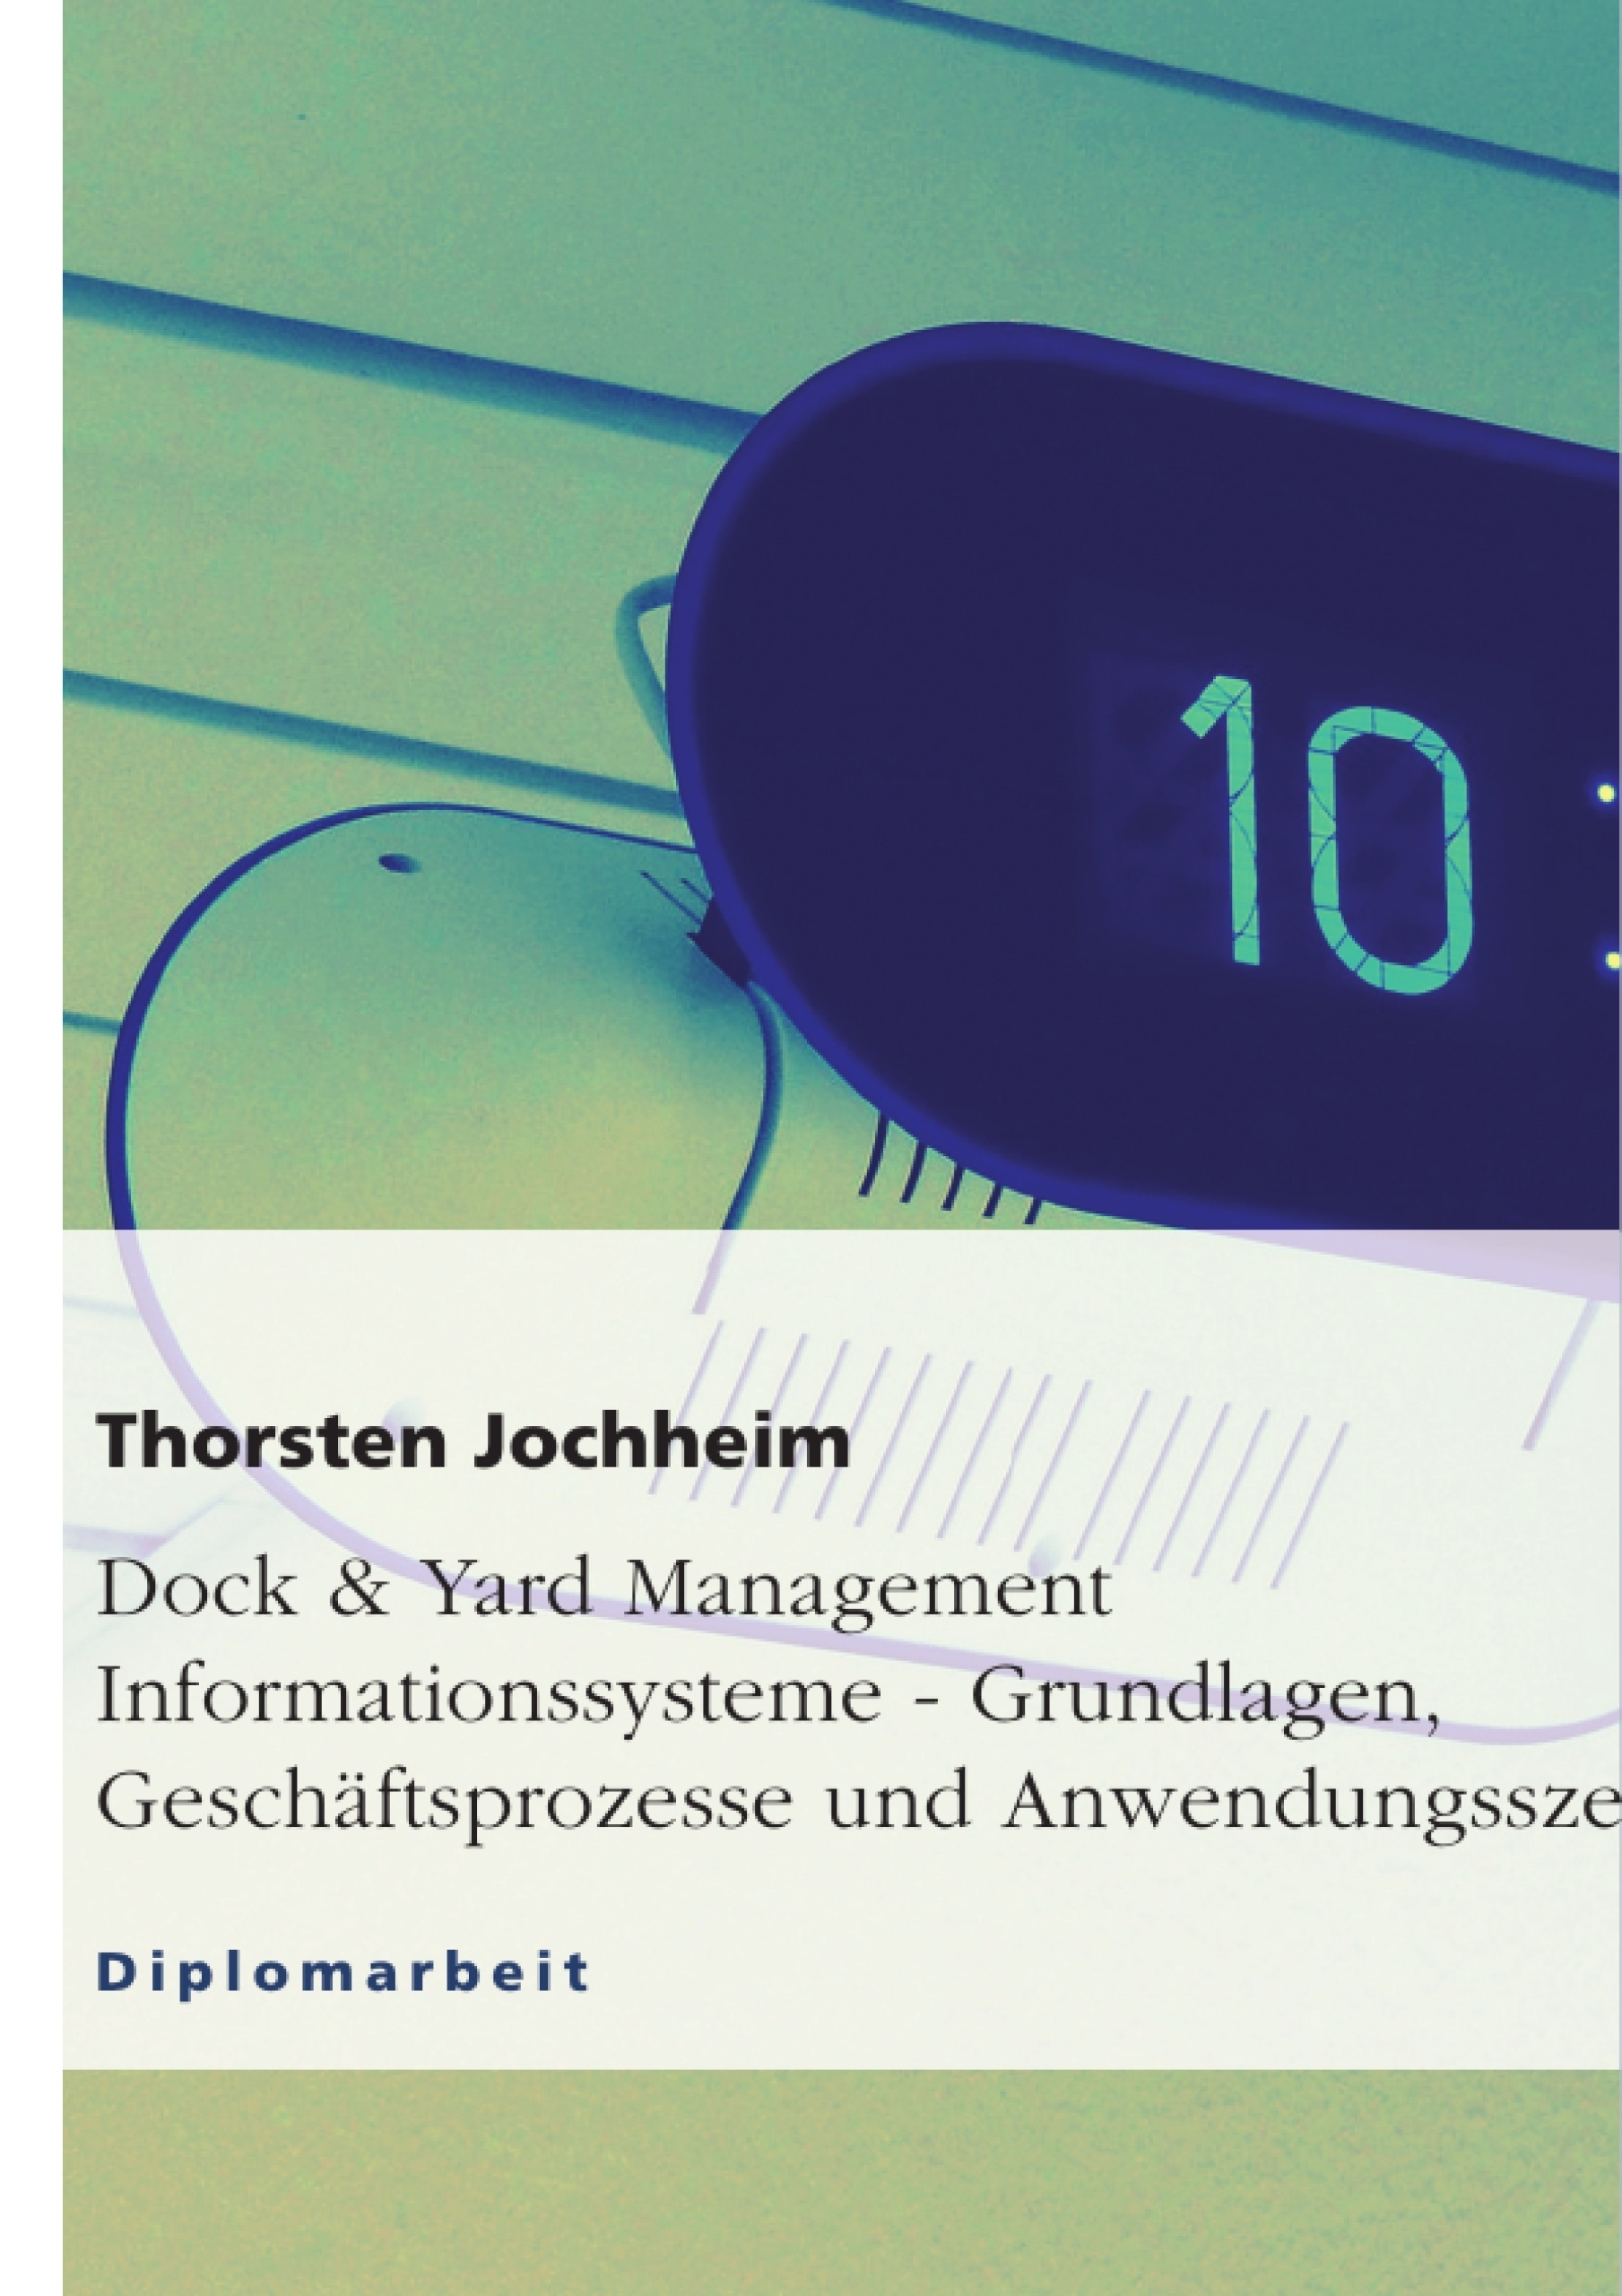 Title: Dock & Yard Management Informationssysteme - Grundlagen, Geschäftsprozesse und Anwendungsszenarien